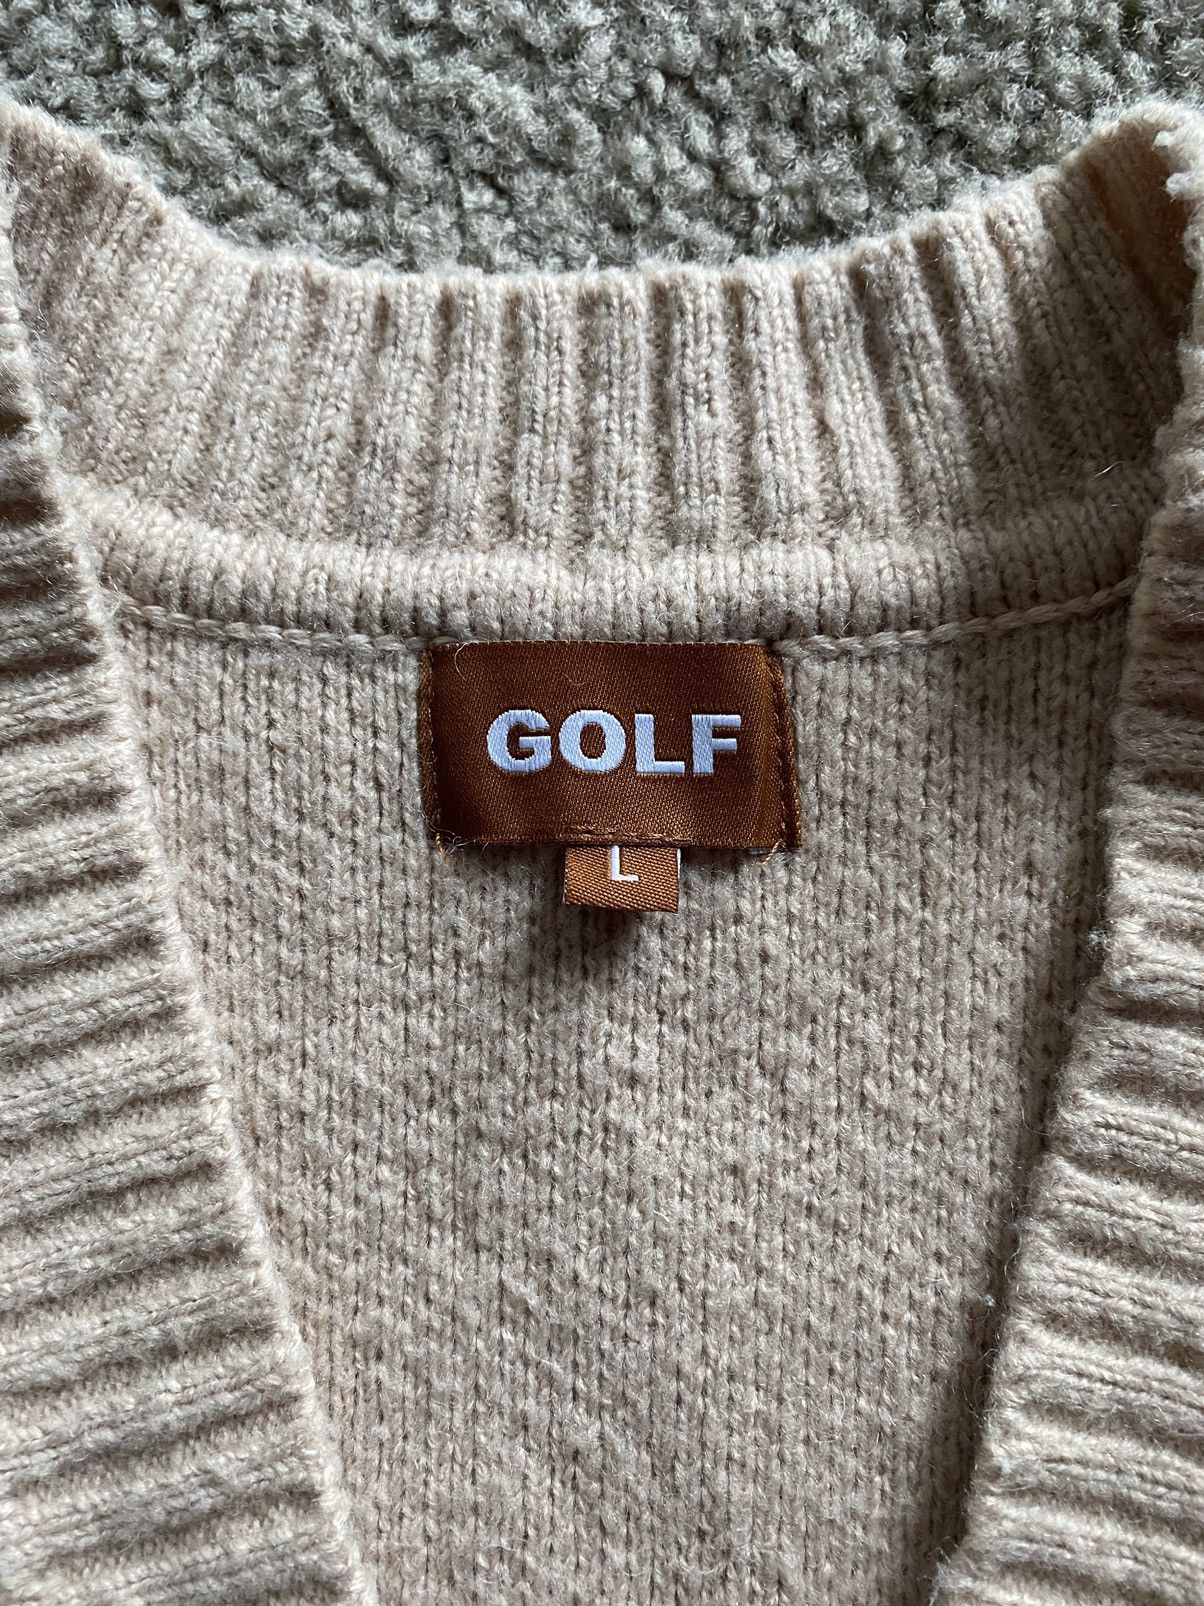 Golf Wang Golf Wang Bee Cardigan Size US L / EU 52-54 / 3 - 2 Preview